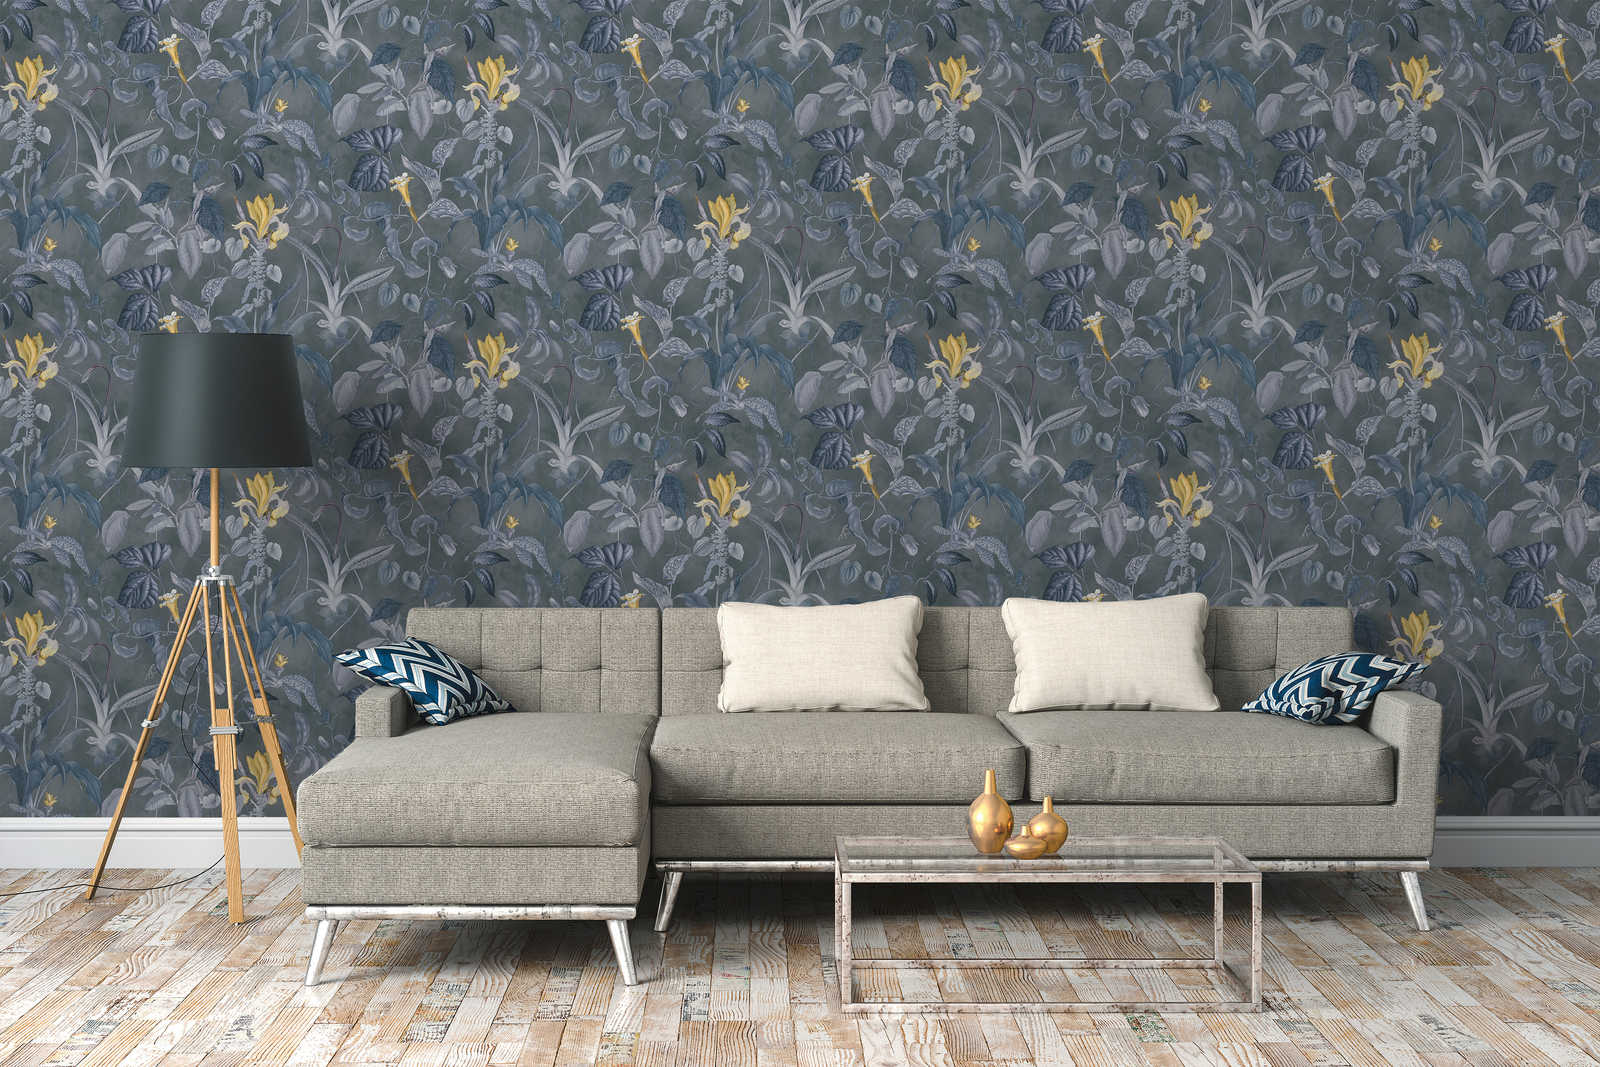             Papier peint fleurs tropicales gris-bleu, design by MICHALSKY
        